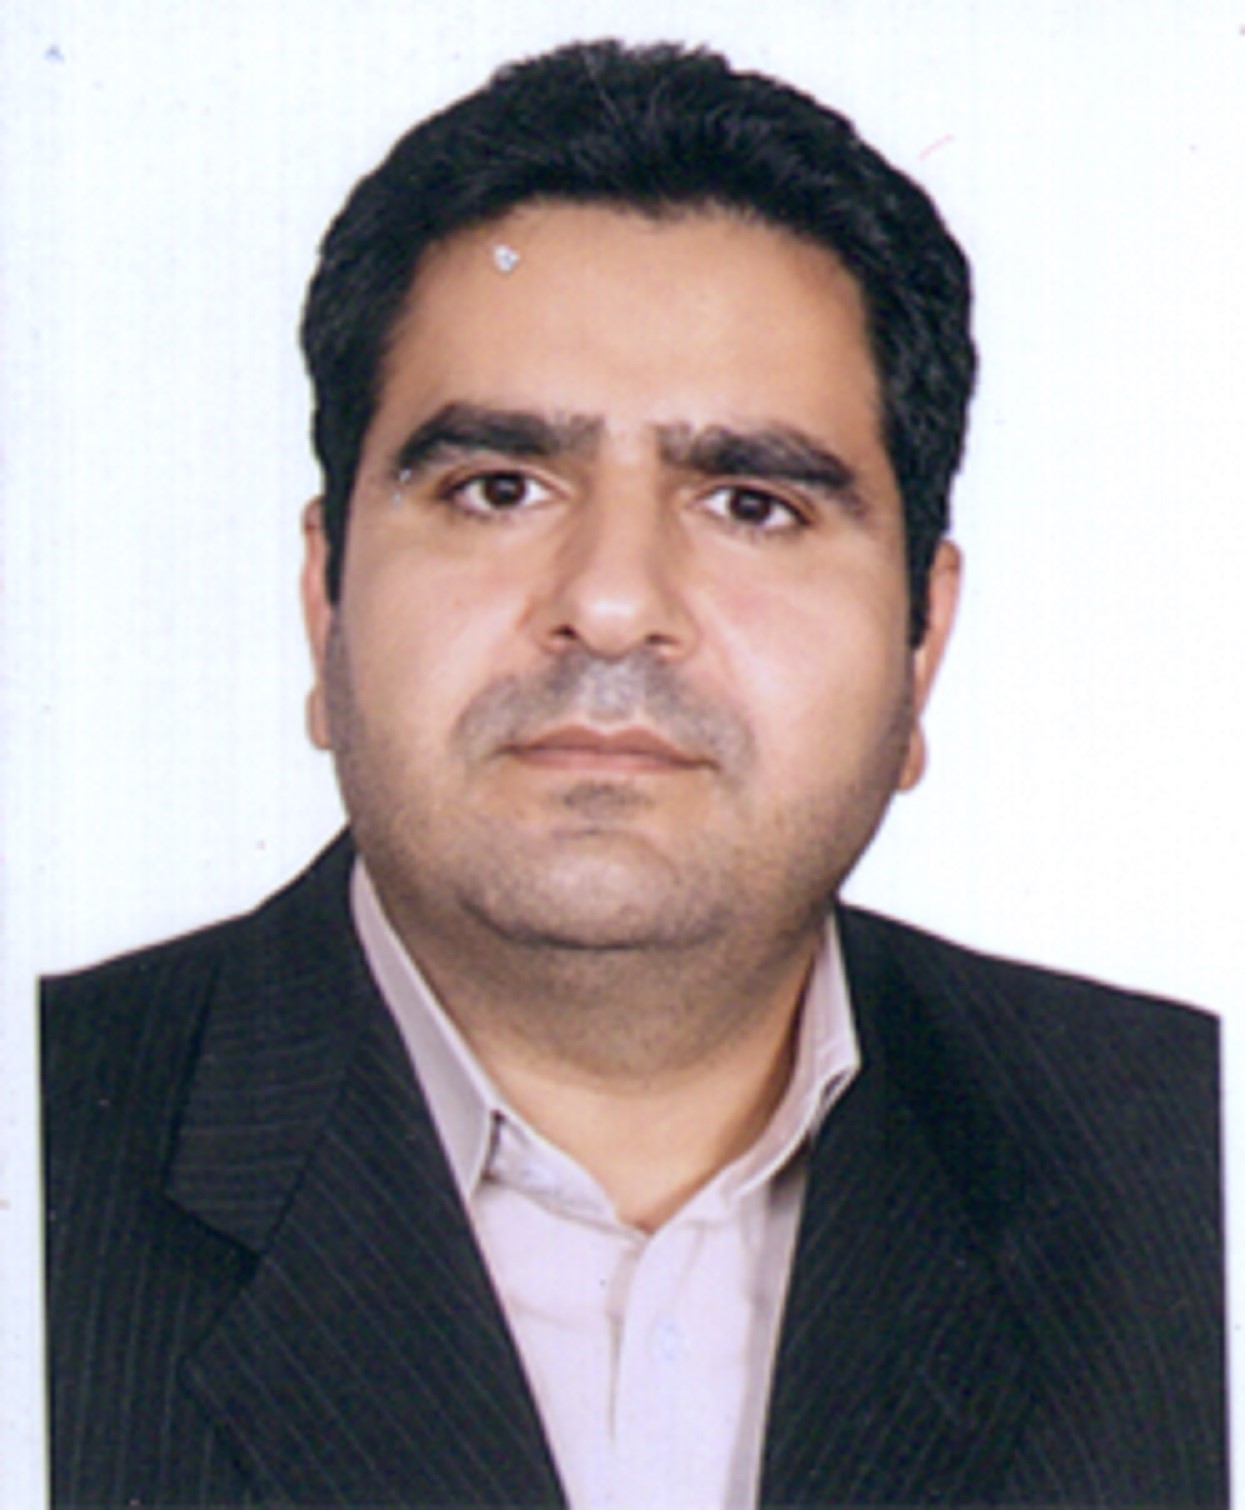 دکتر سیدرضا حسینی